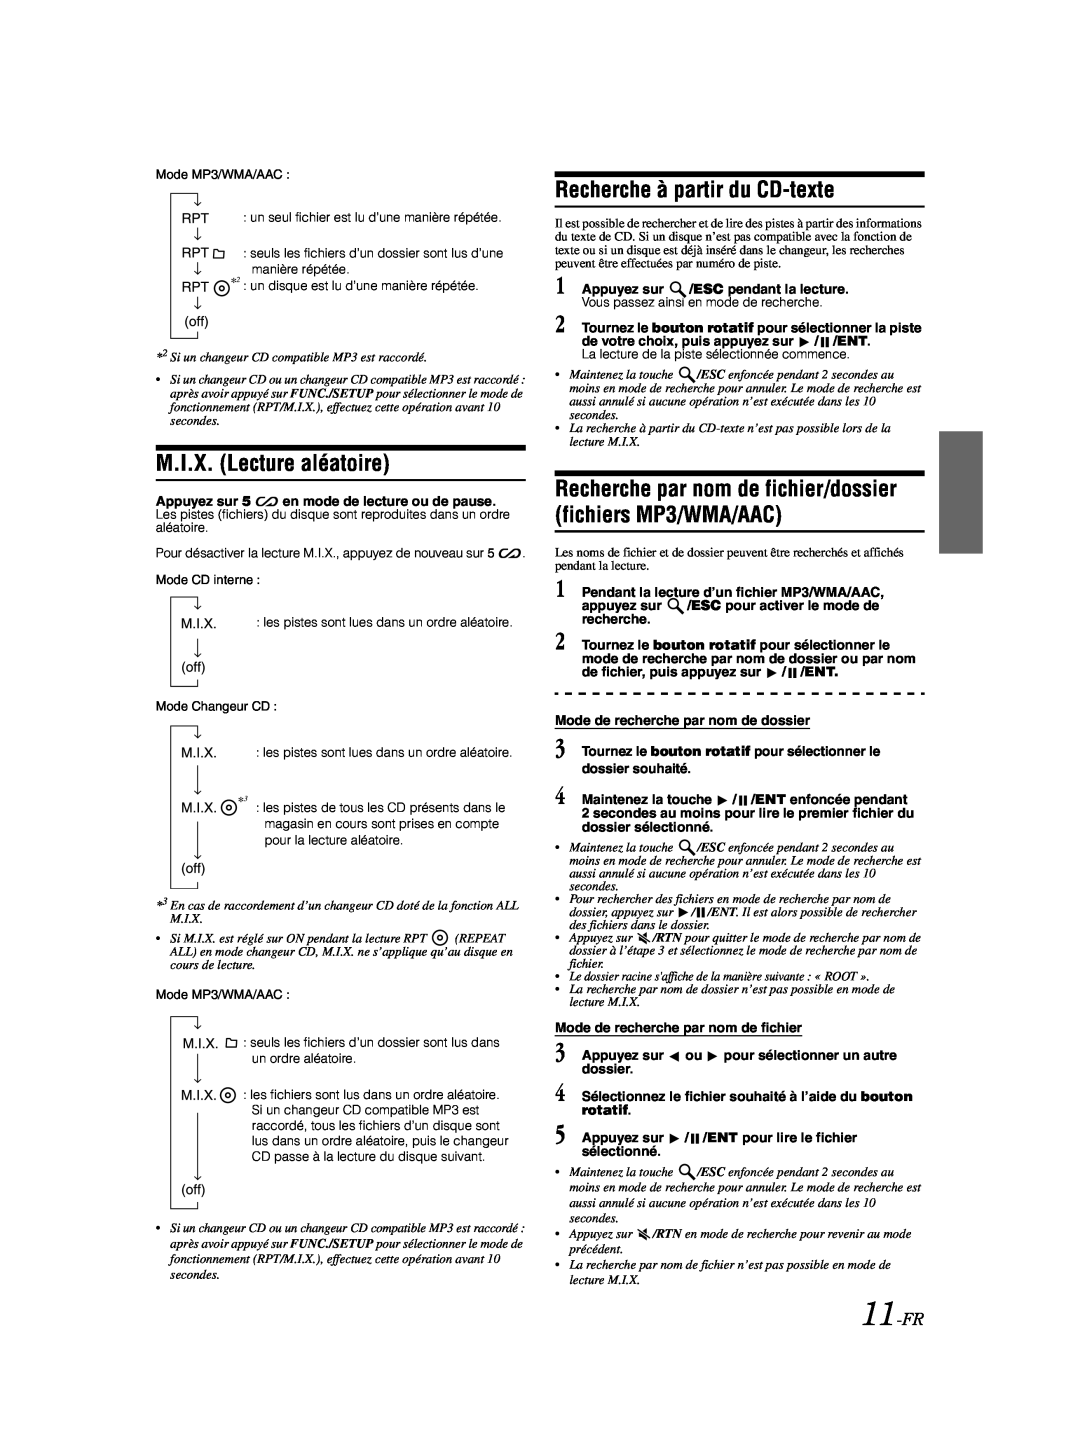 Alpine CDA-9885 owner manual M.I.X. Lecture aléatoire, Recherche à partir du CD-texte, 11-FR 